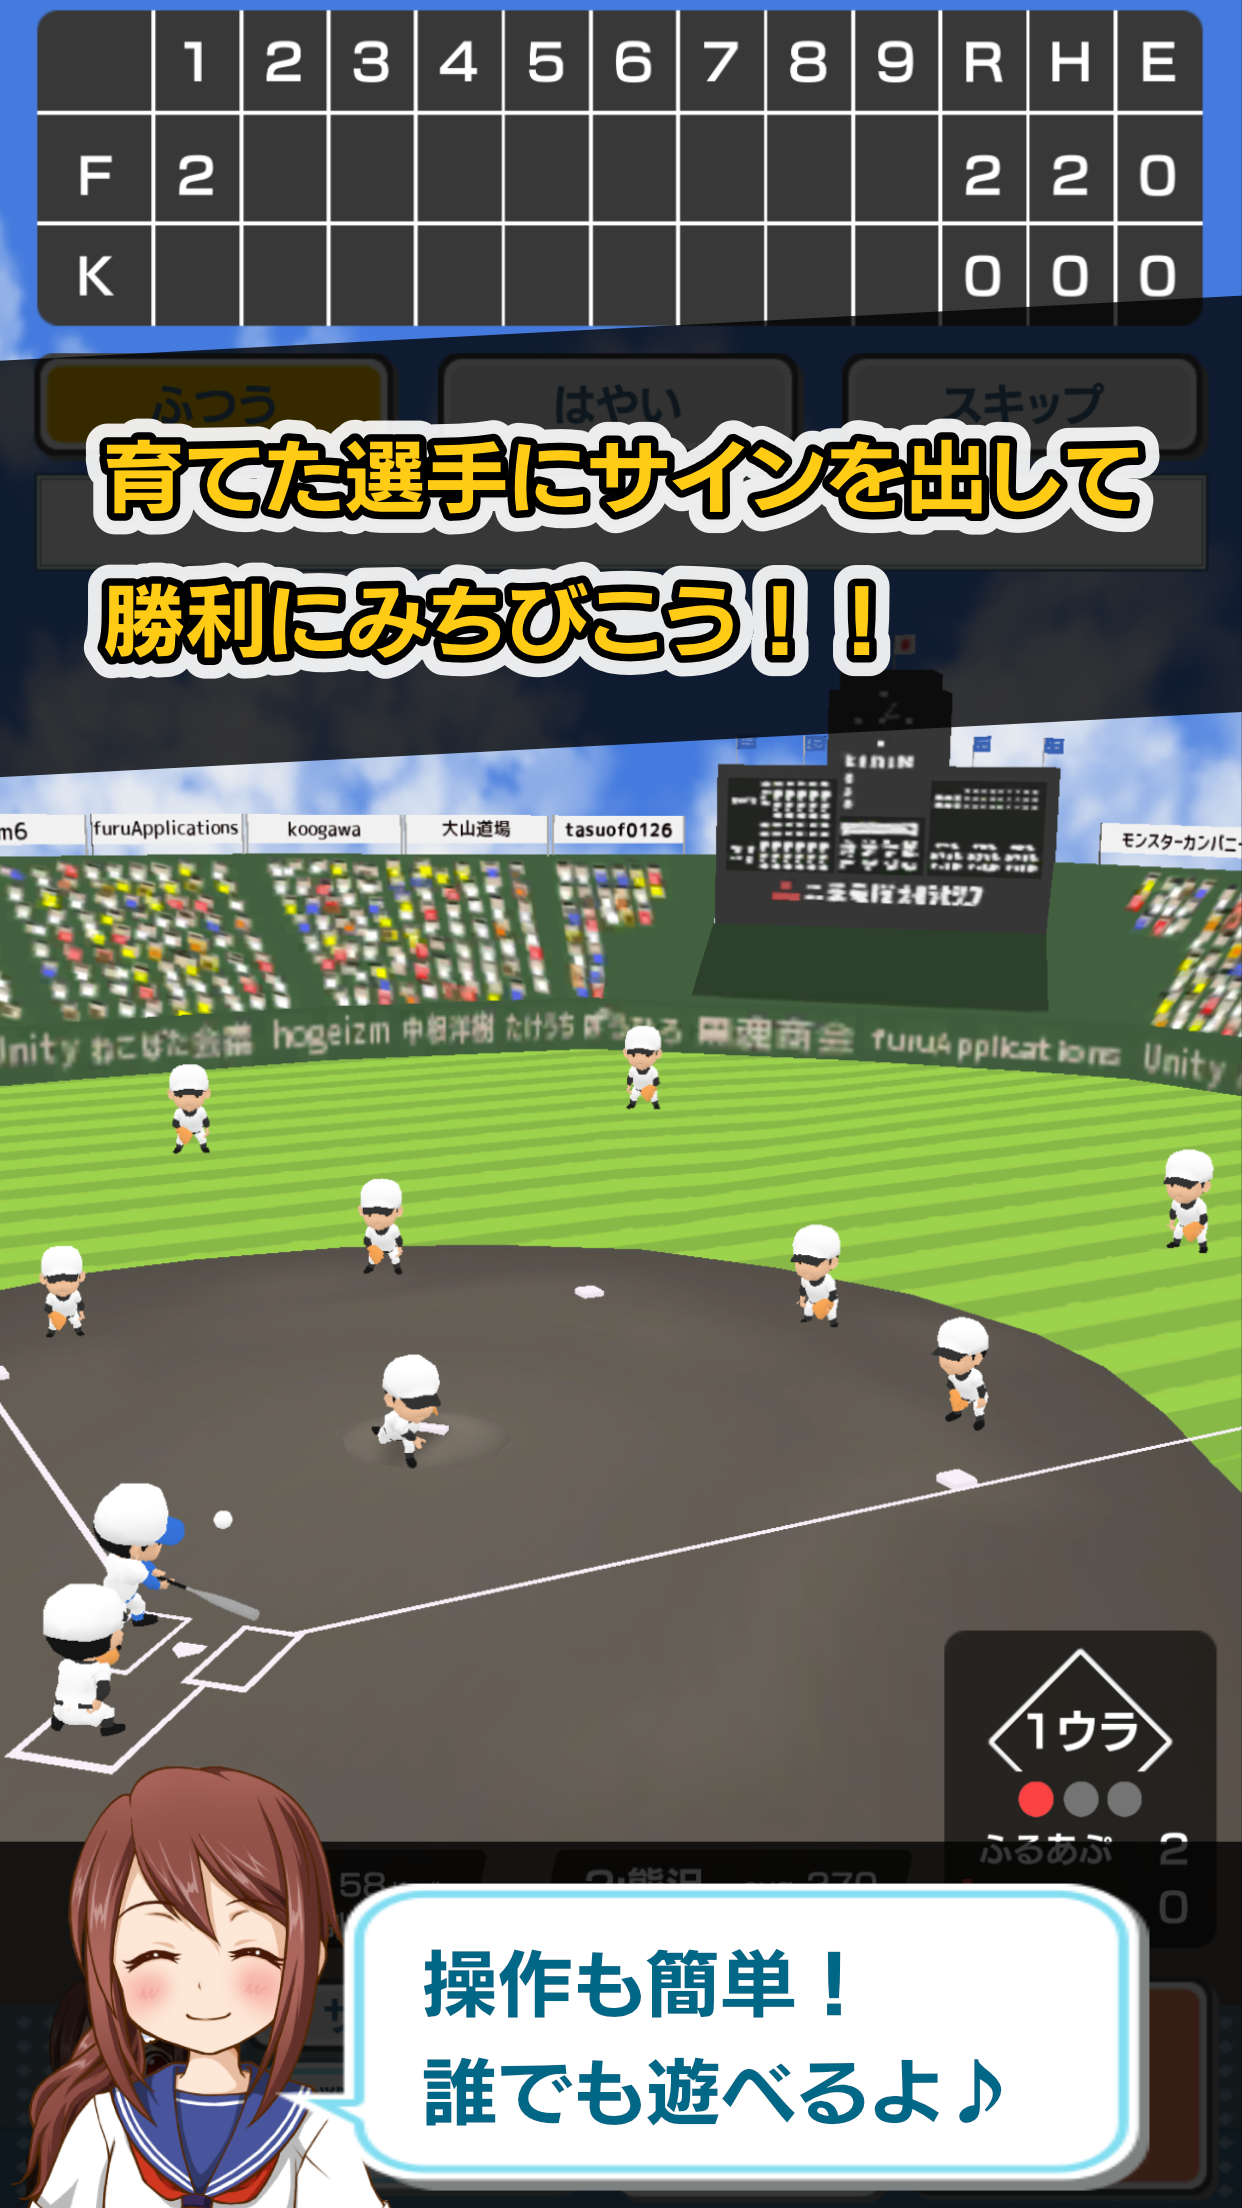 Screenshot 1 of Koshien - Beisebol da Escola Secundária 2.3.9